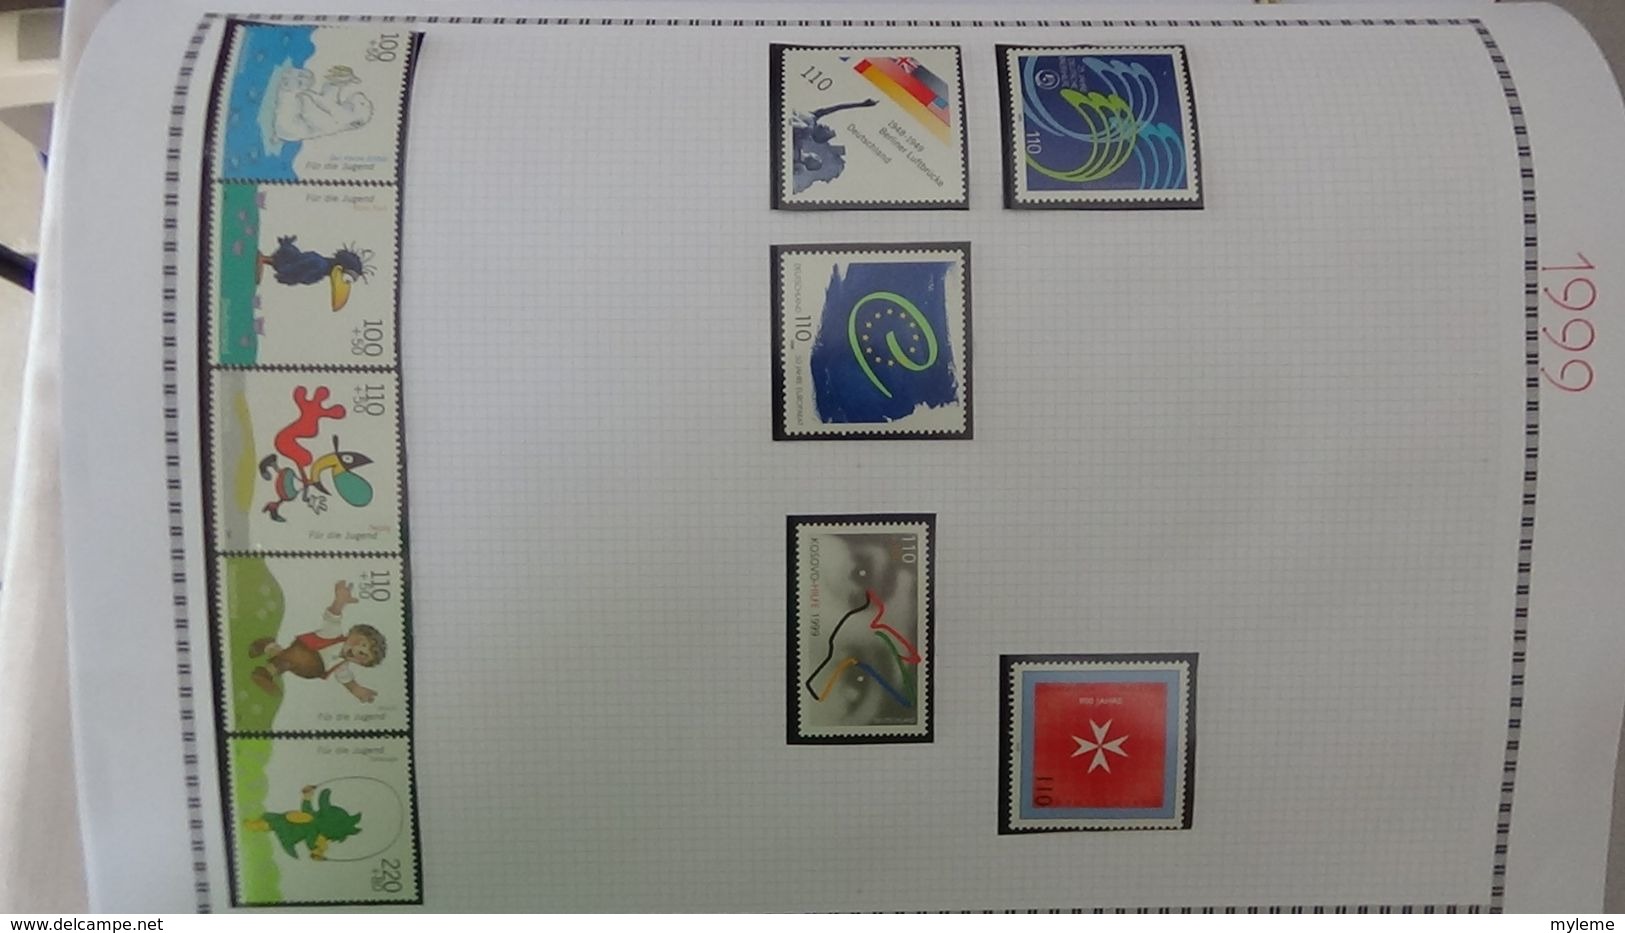 H14 Collection timbres, blocs et carnets ** Allemagne Fédérale de 1980 à 2000